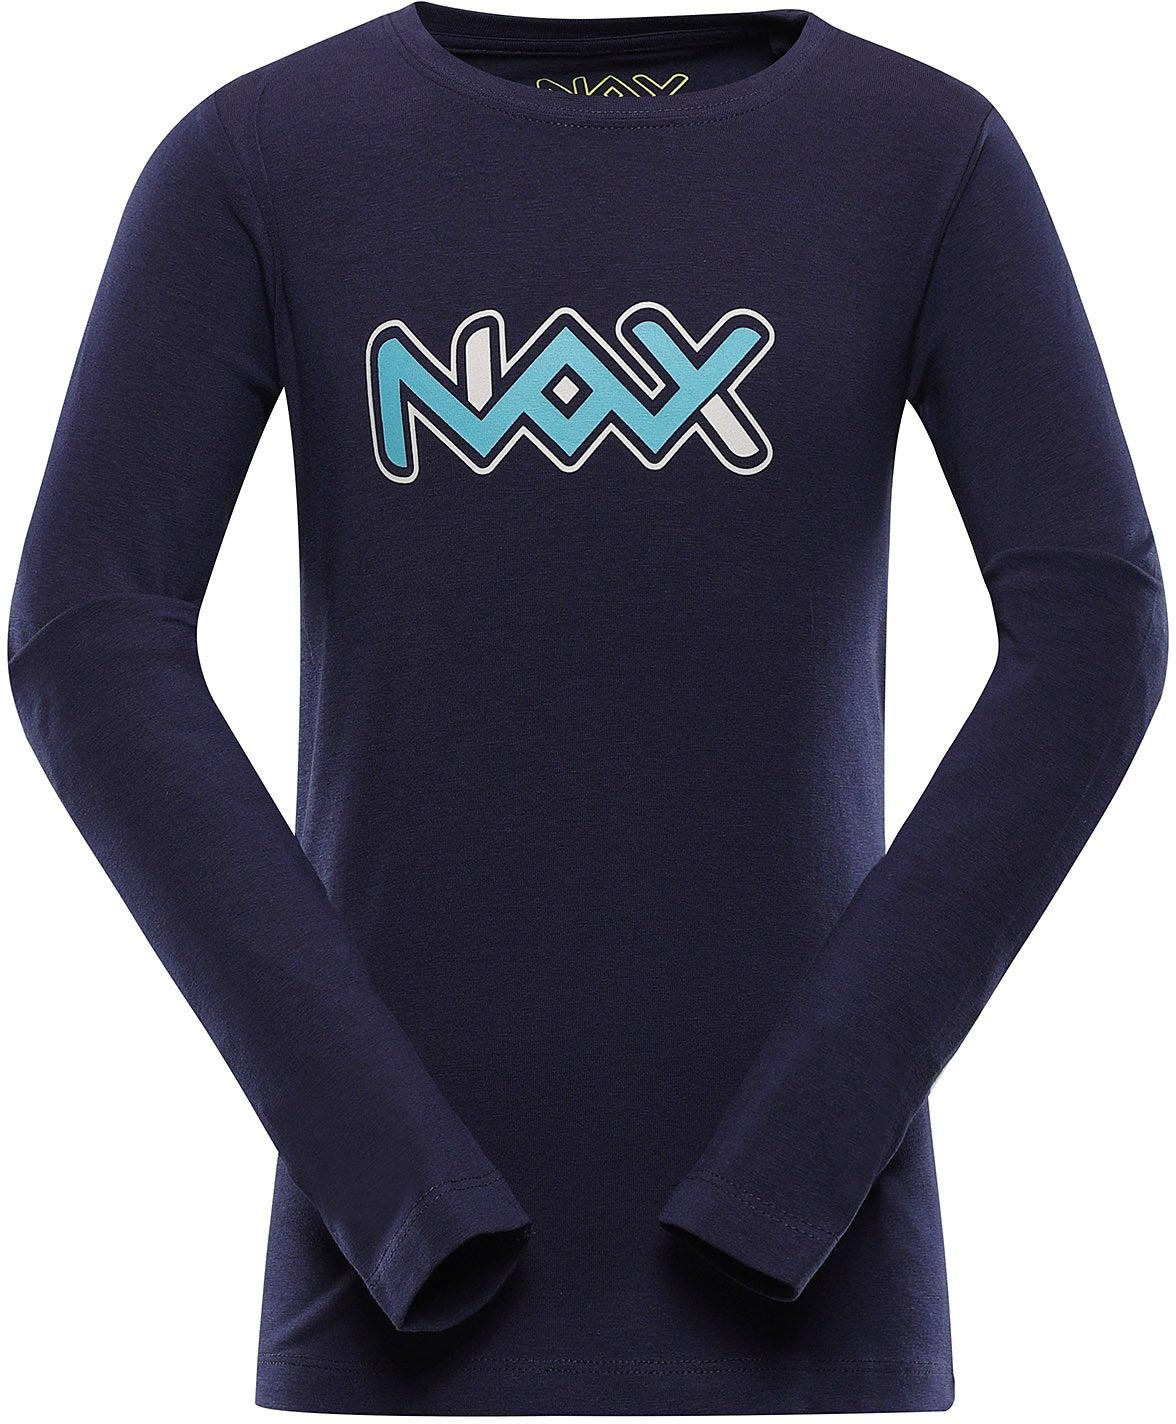 Dětské triko Nax Pralano|128-134